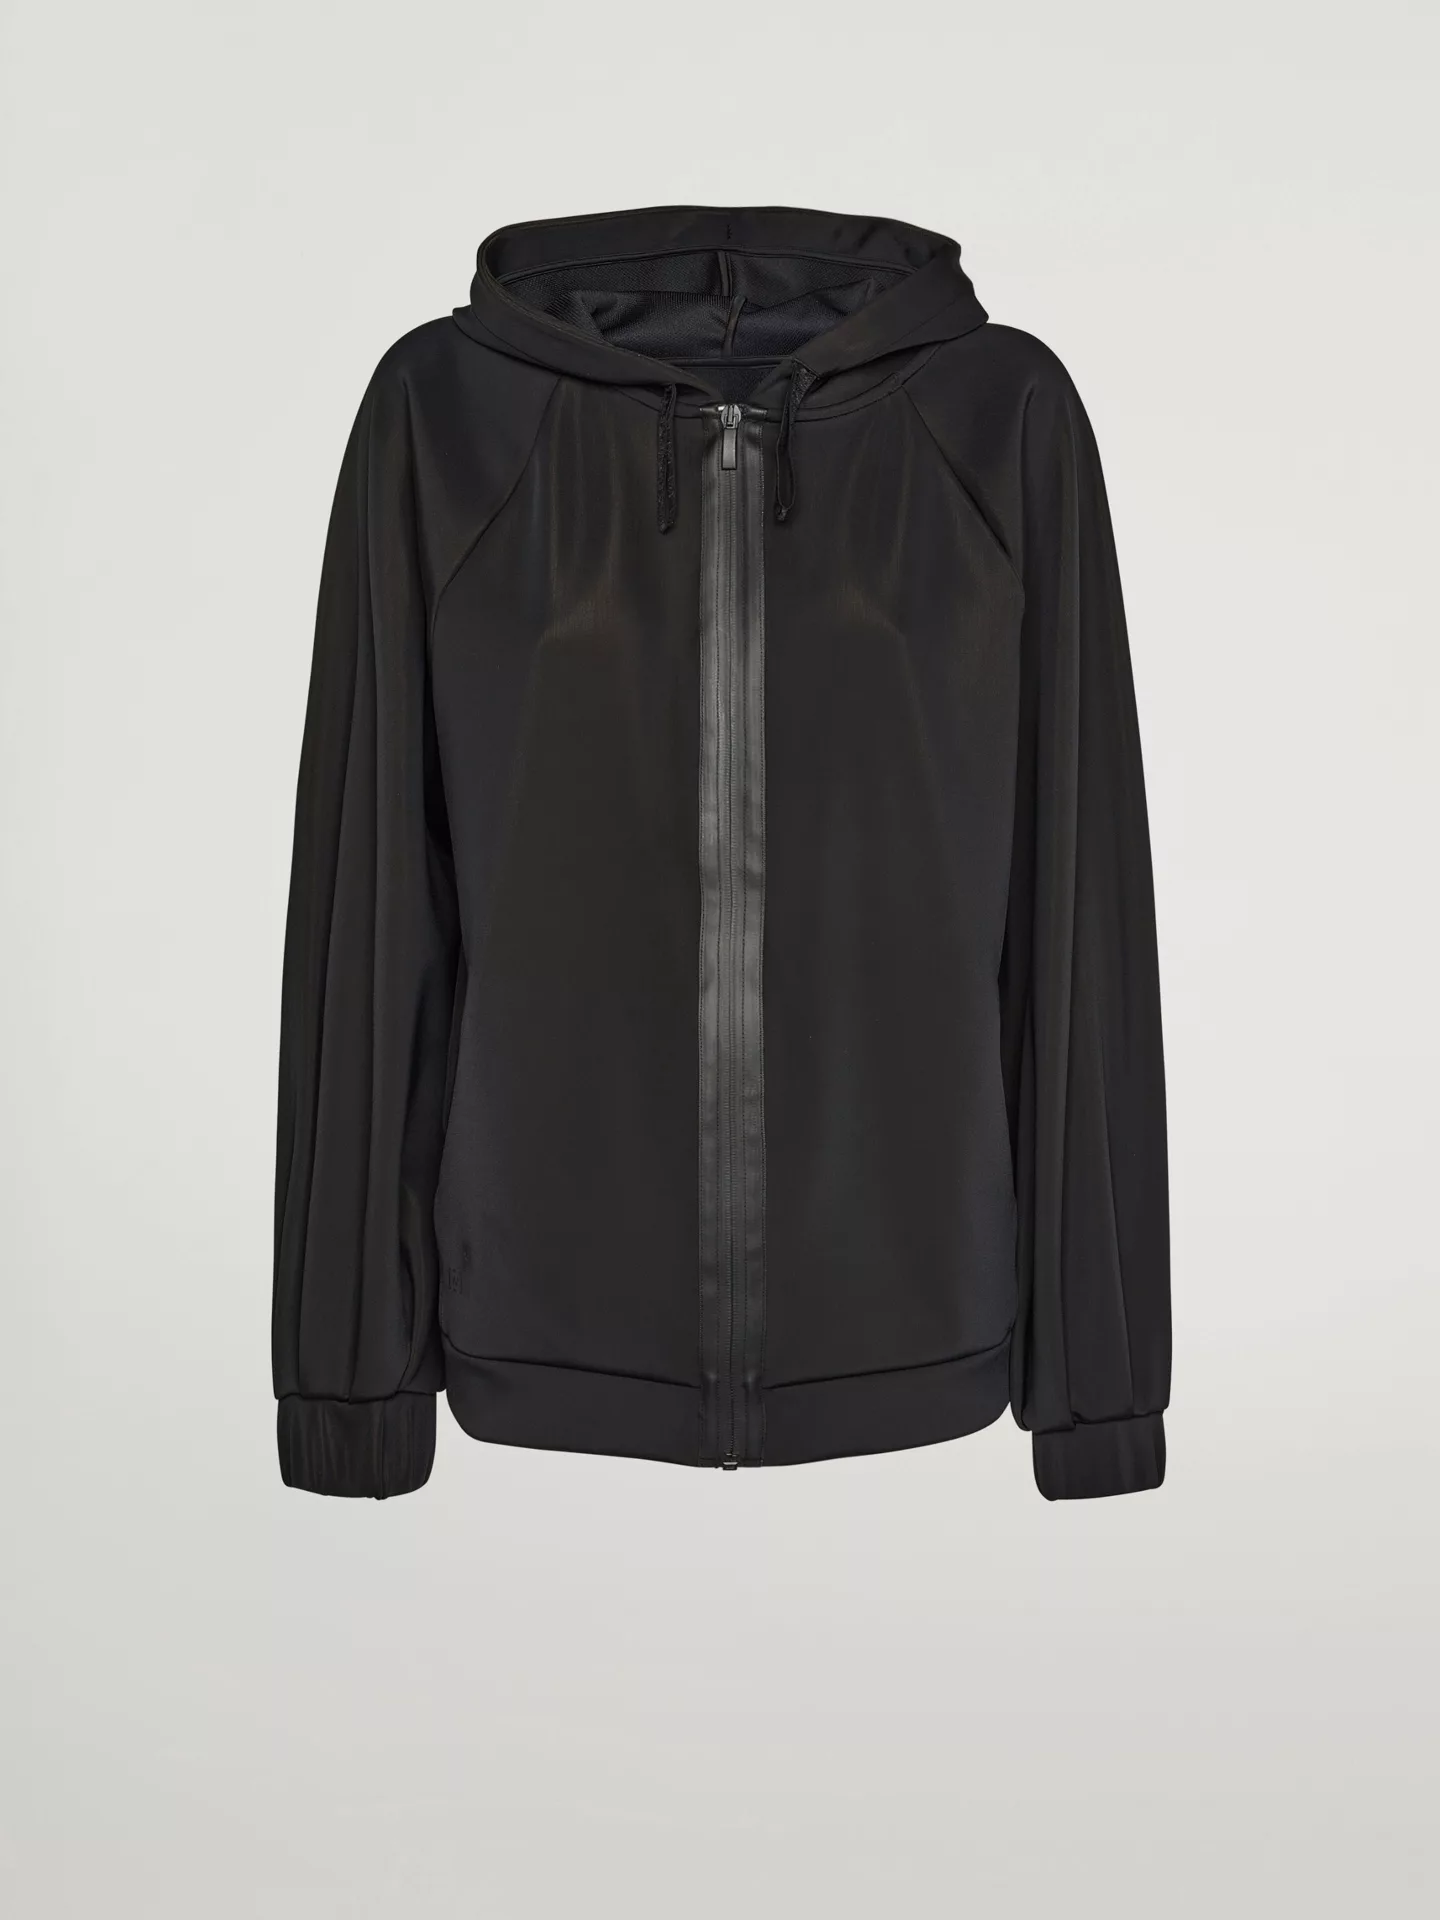 Wolford - Net overlay Jacket, Frau, black, Größe: L günstig online kaufen